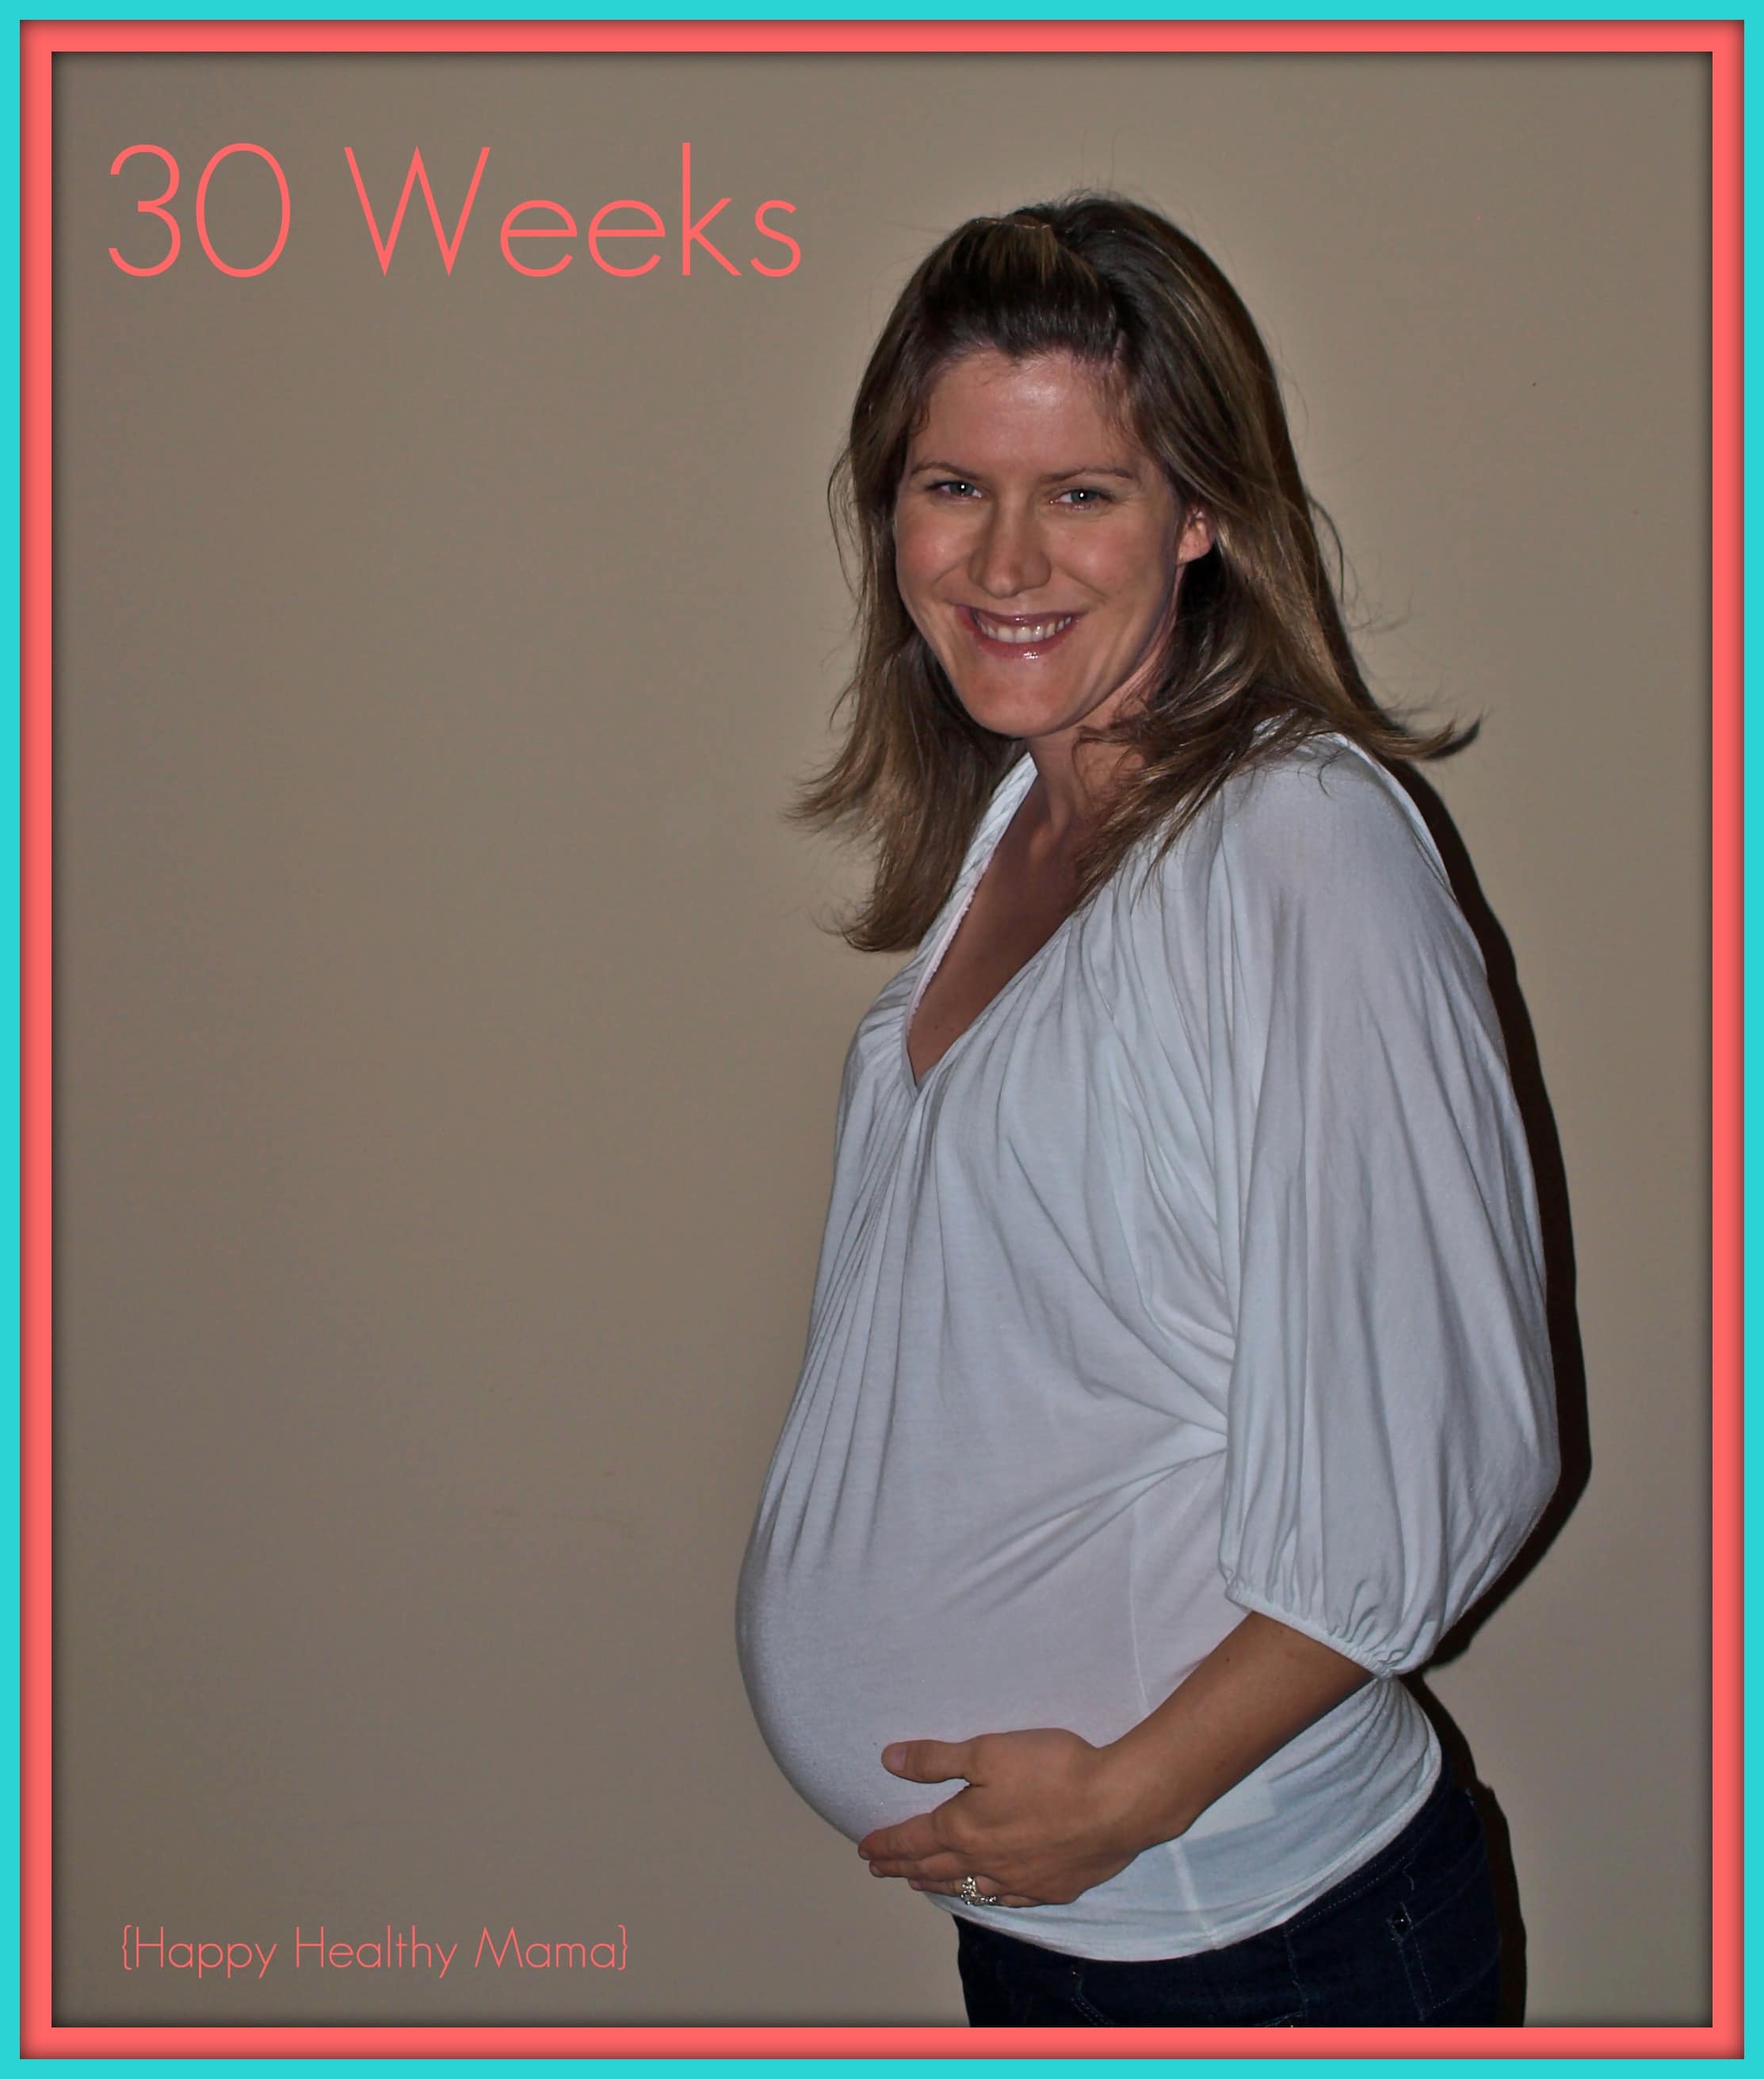 My Pregnancy At 30 Weeks